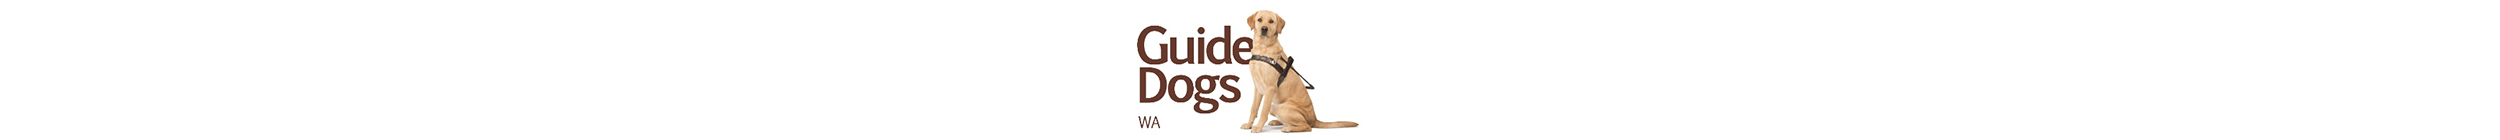 Guide Dogs WA Long.png